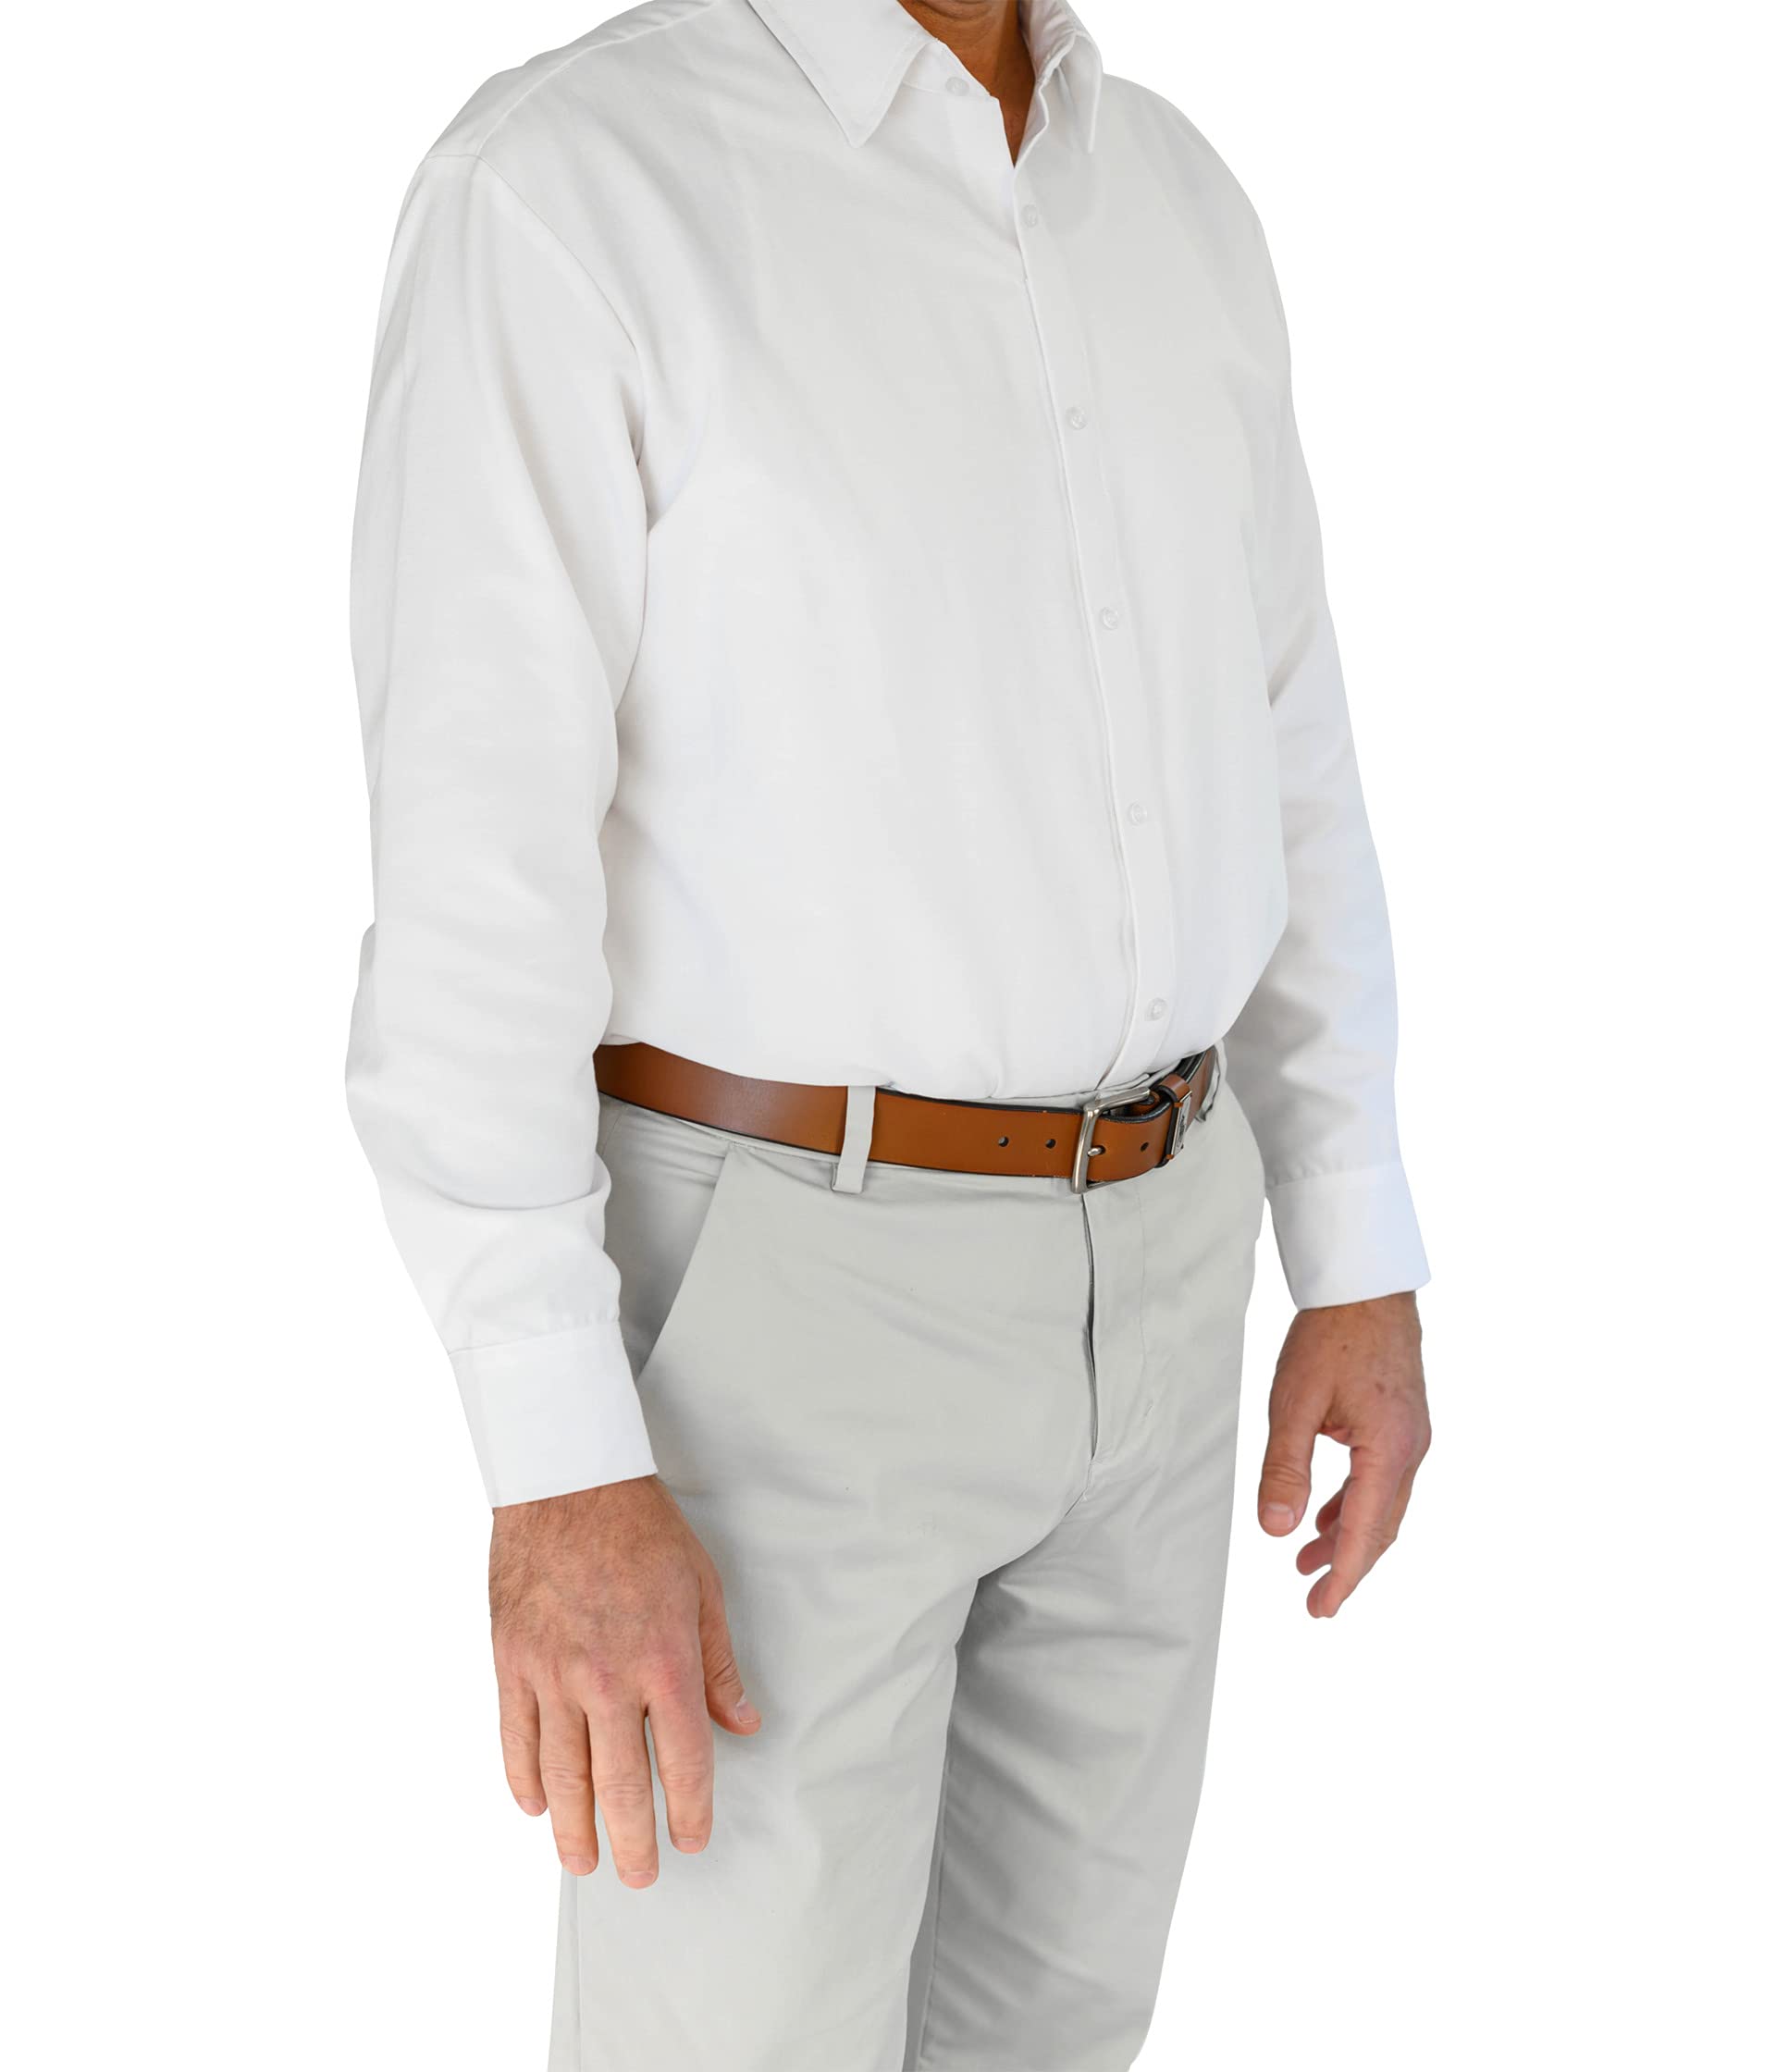 Адаптивная рубашка Бо Smart Adaptive Clothing